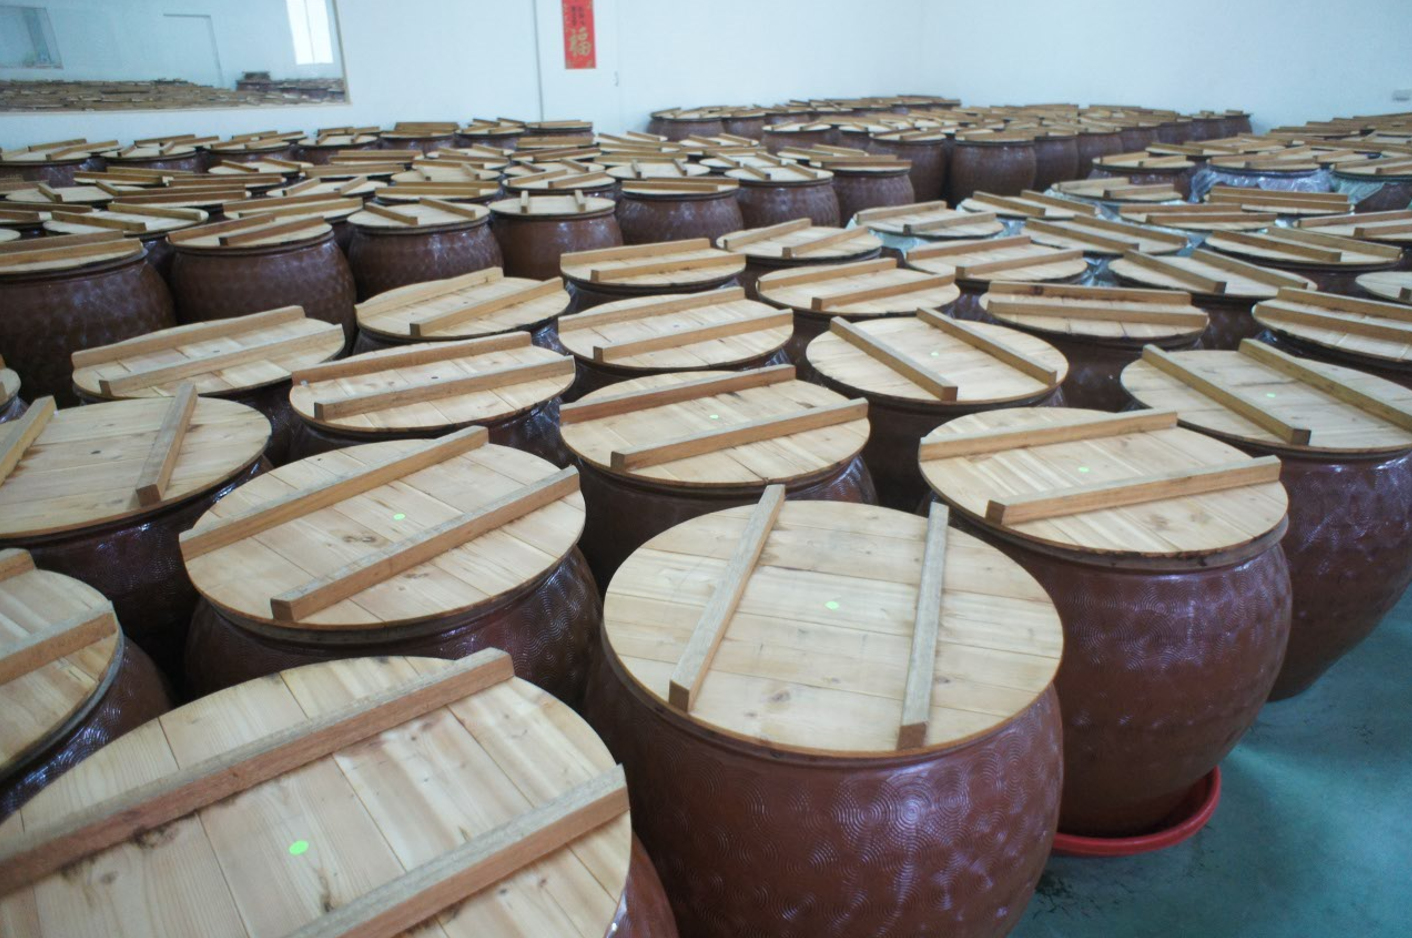 埔里酢工場が設立され、オリジナルビネガーシリーズの健康酢が正式に発売されました。